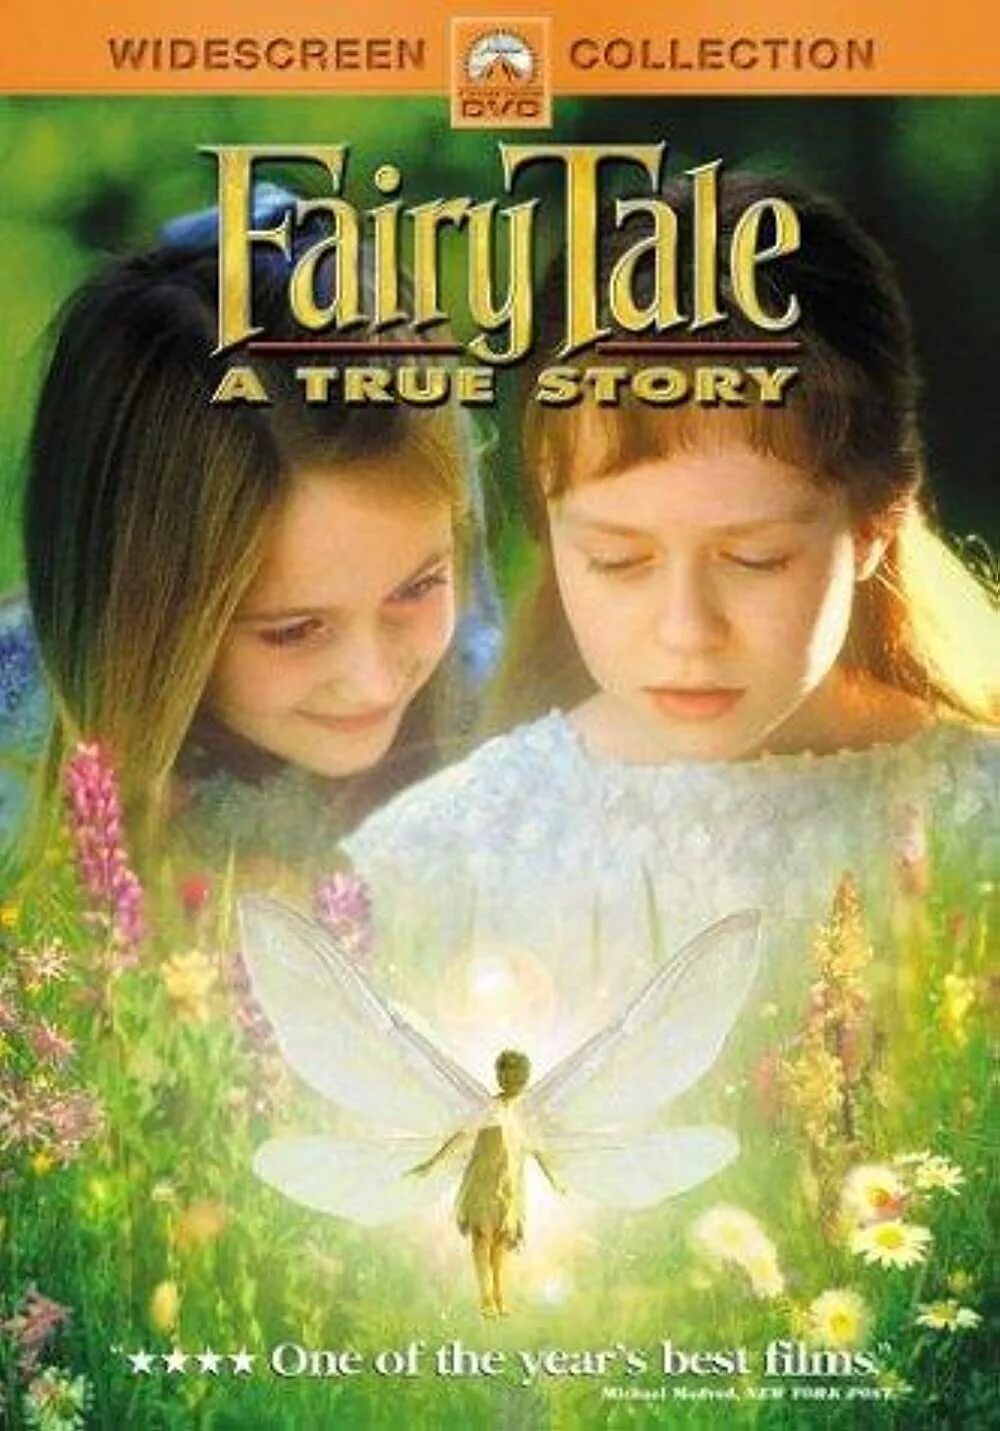 Волшебная история Fairytale: a true story, 1997.